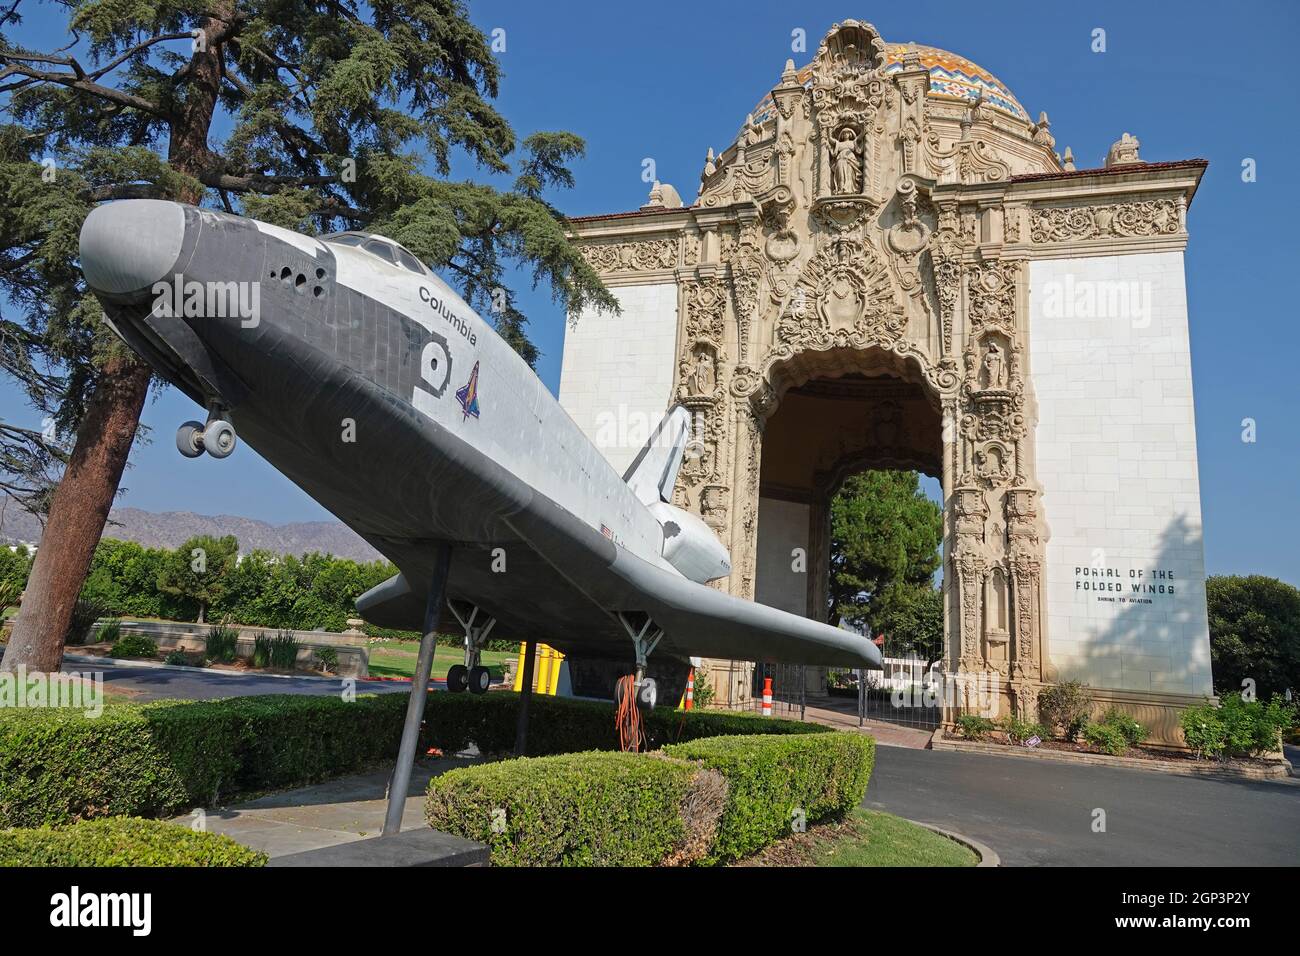 Burbank, CA / USA - 26 settembre 2021: Il portale del Santuario delle ali piegate per l'aviazione è mostrato al cimitero del parco commemorativo di Pierce Brother Valhalla. Questo Foto Stock